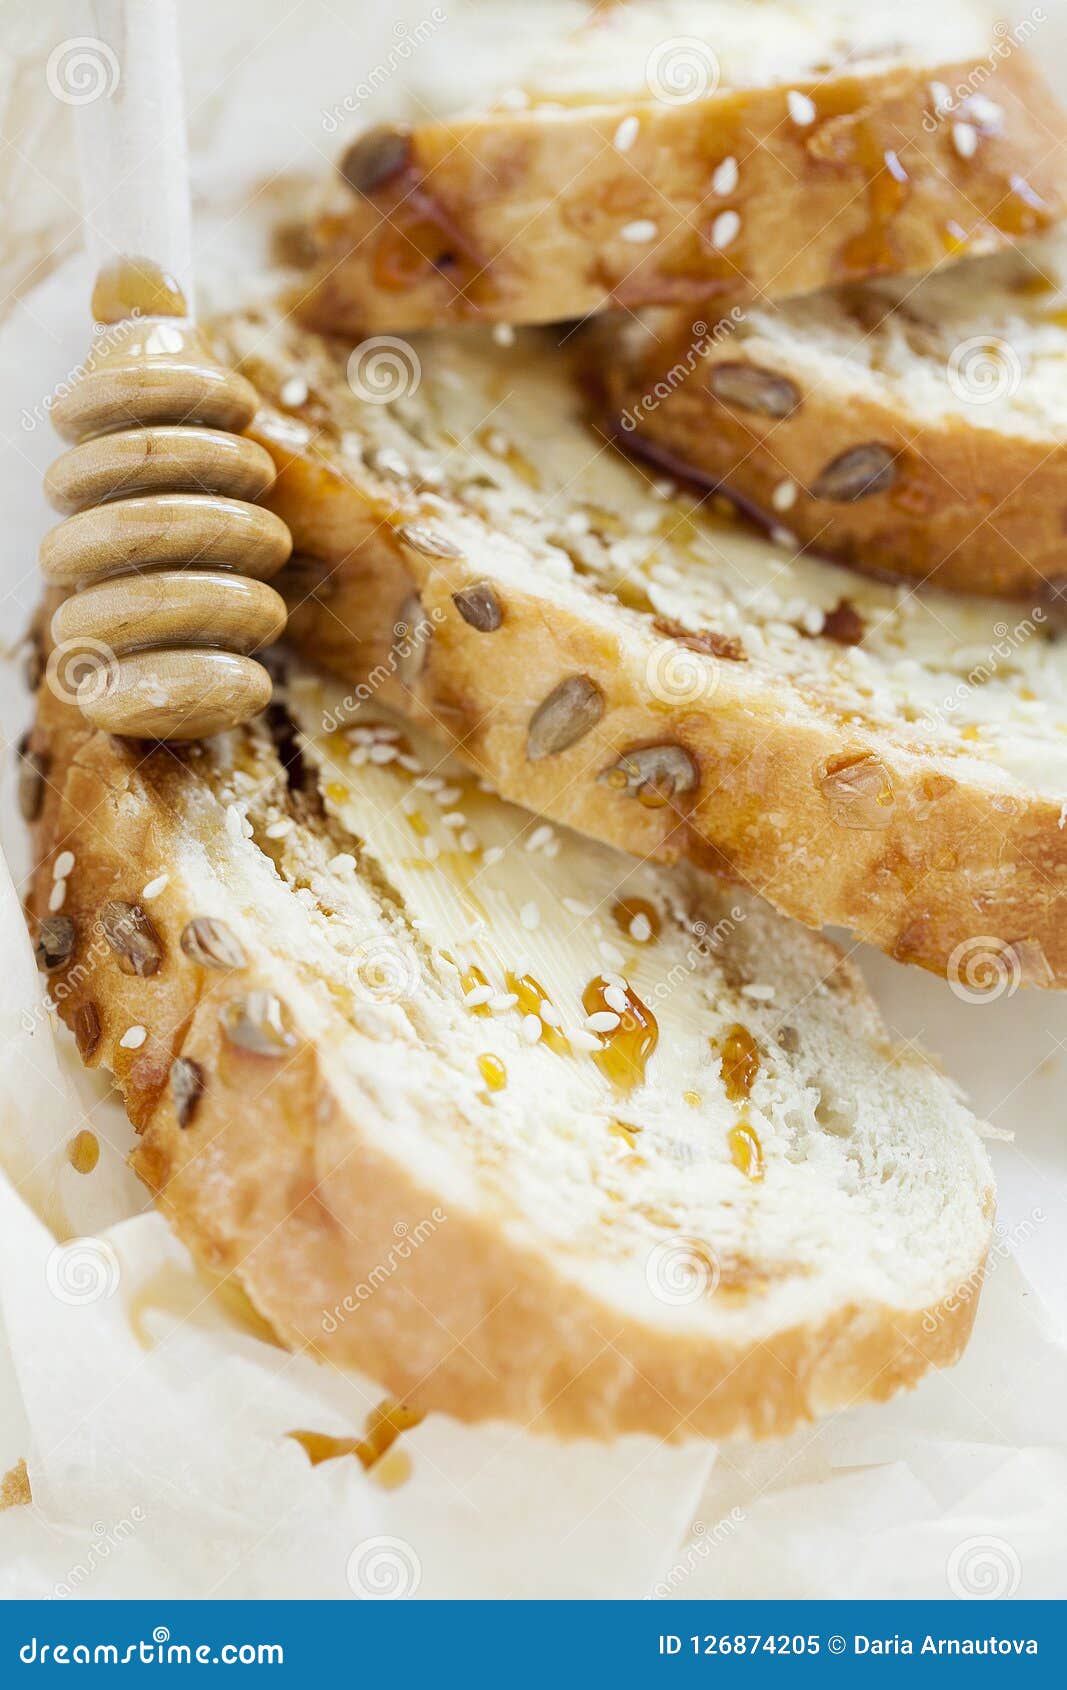 Pane tostato del grano per la prima colazione con burro e miele su fondo bianco closeup. Pane tostato croccante tostato del pane integrale con burro, miele e semi di sesamo su fondo bianco fine sana della prima colazione su verticalmente